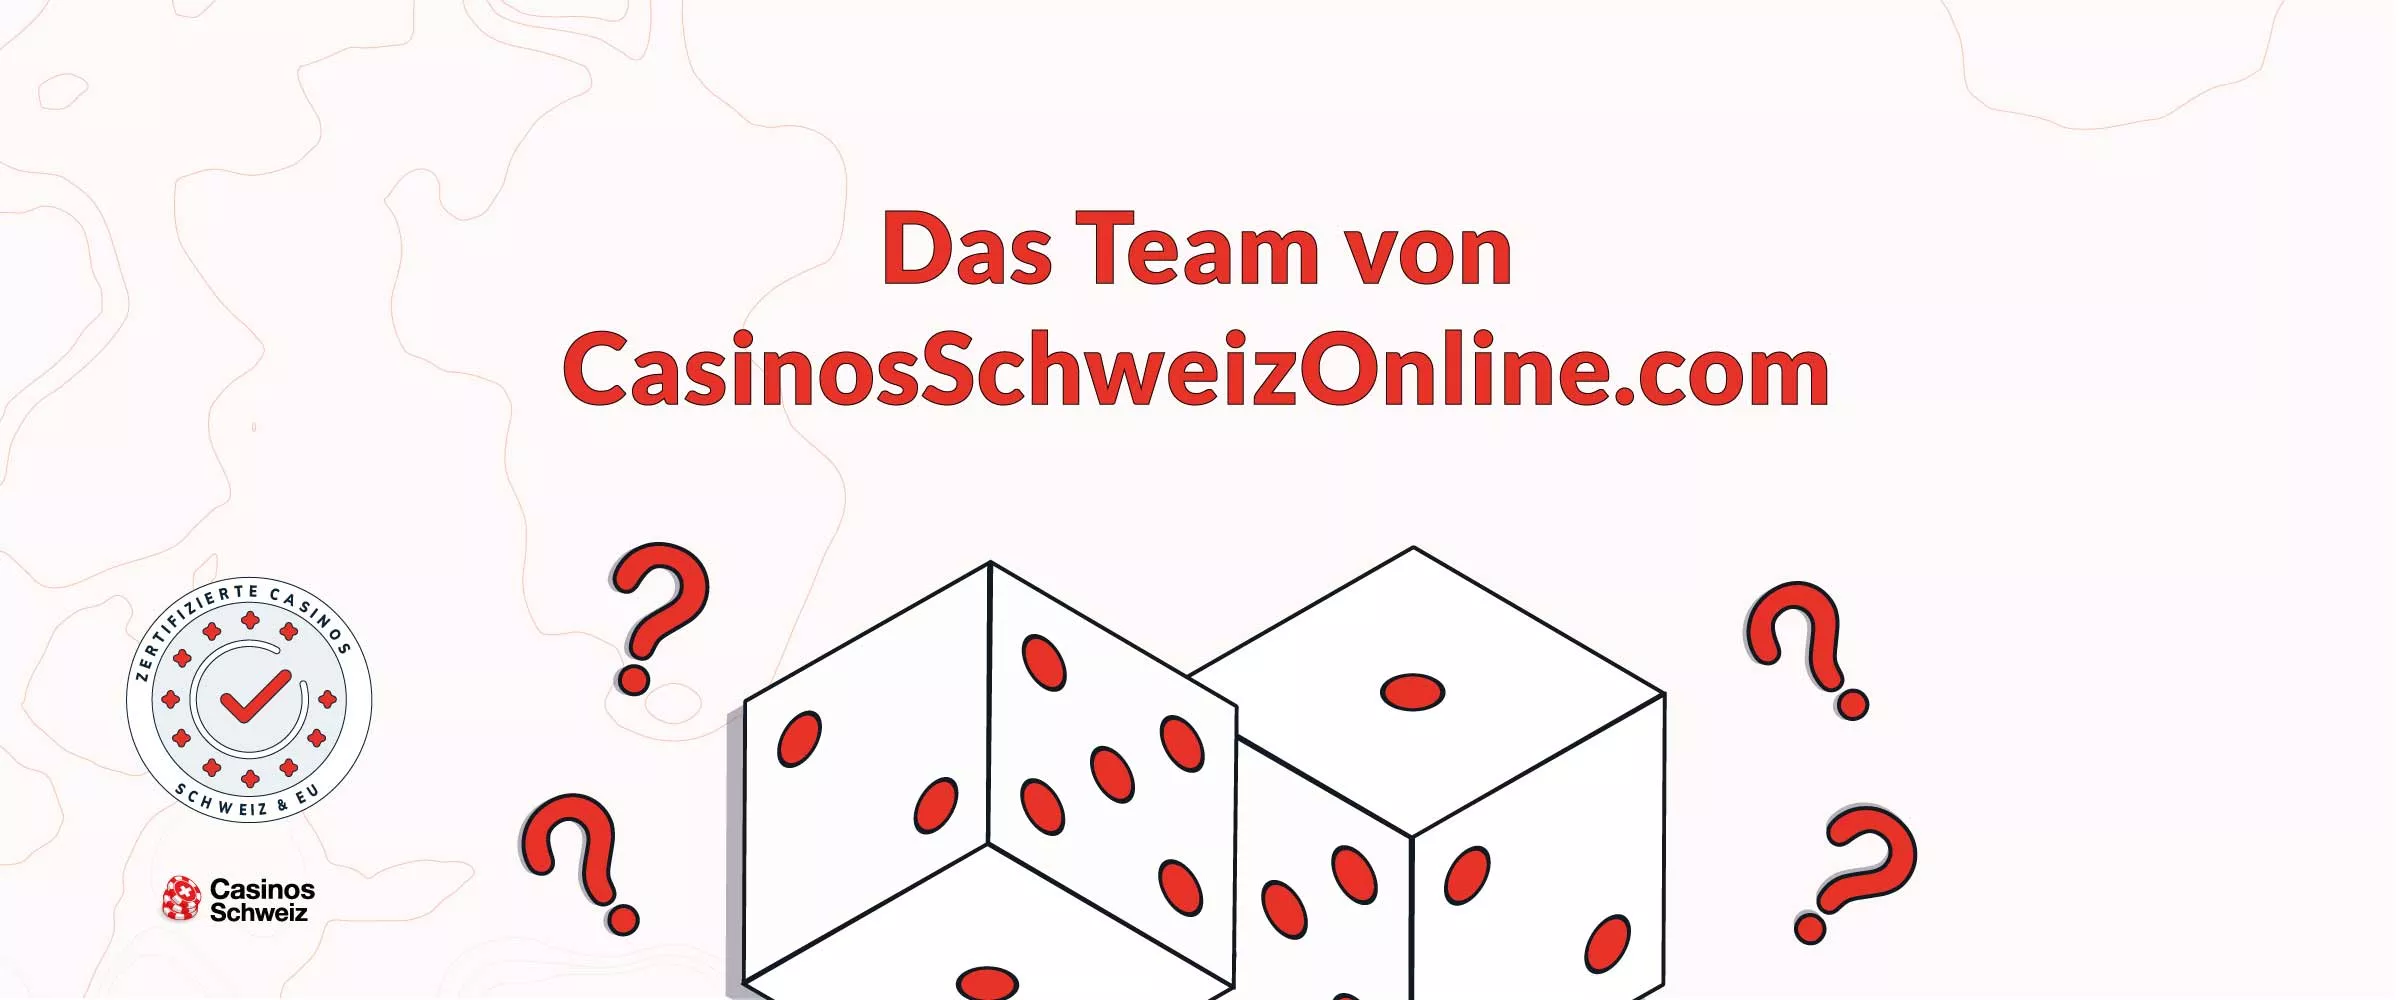 Über Uns - Das Team von CasinosSchweizOnline.com